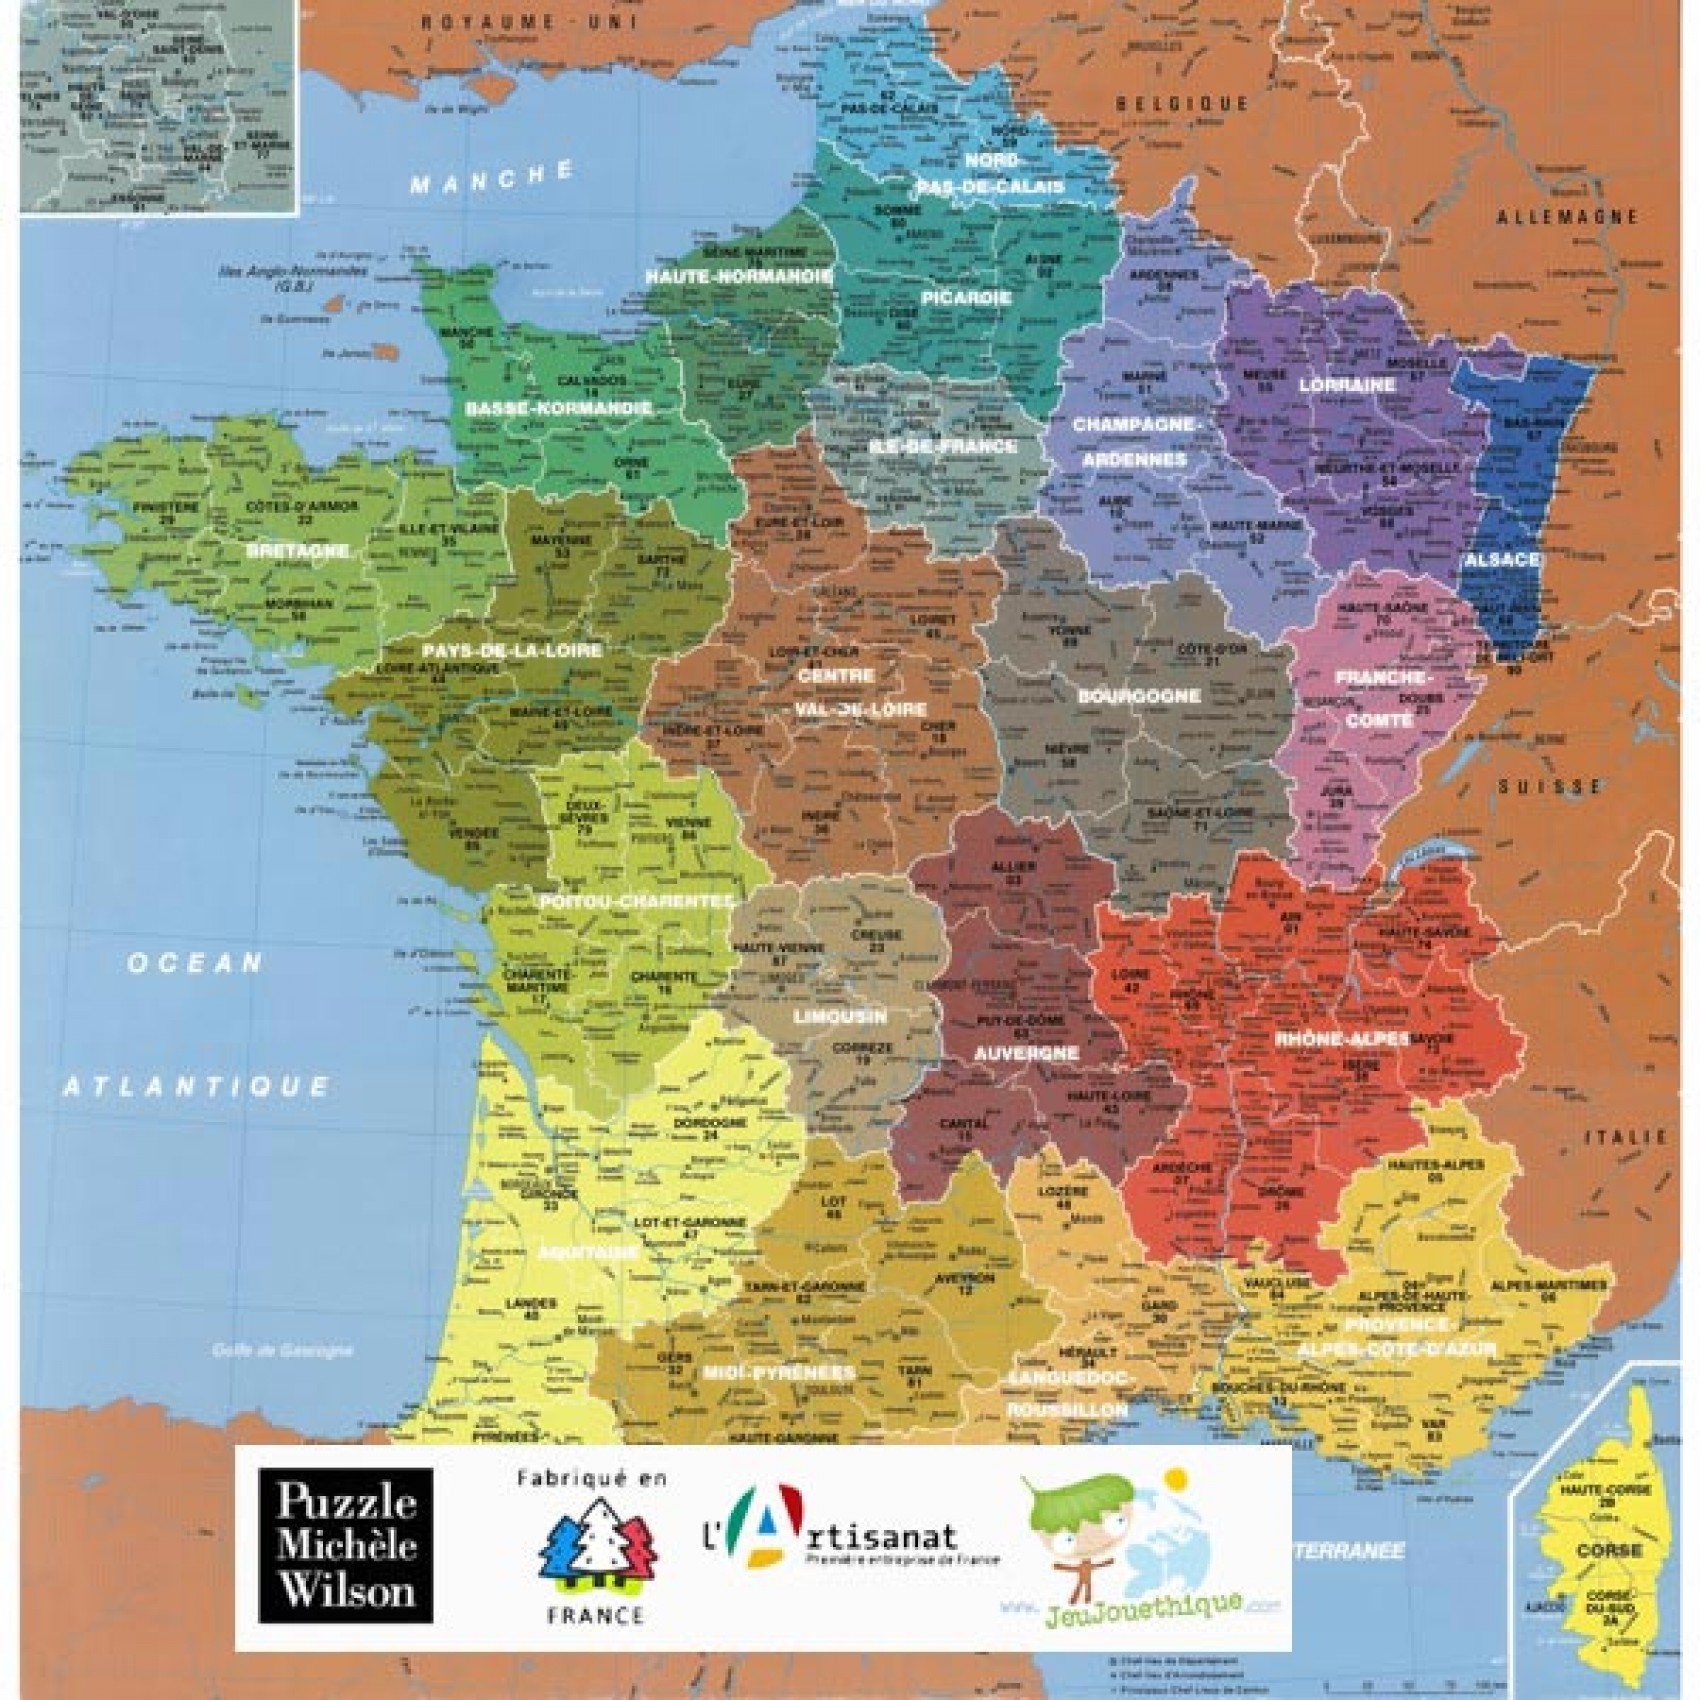 Puzzle 1-an - Livraison gratuite à partir de 100 € vers la France